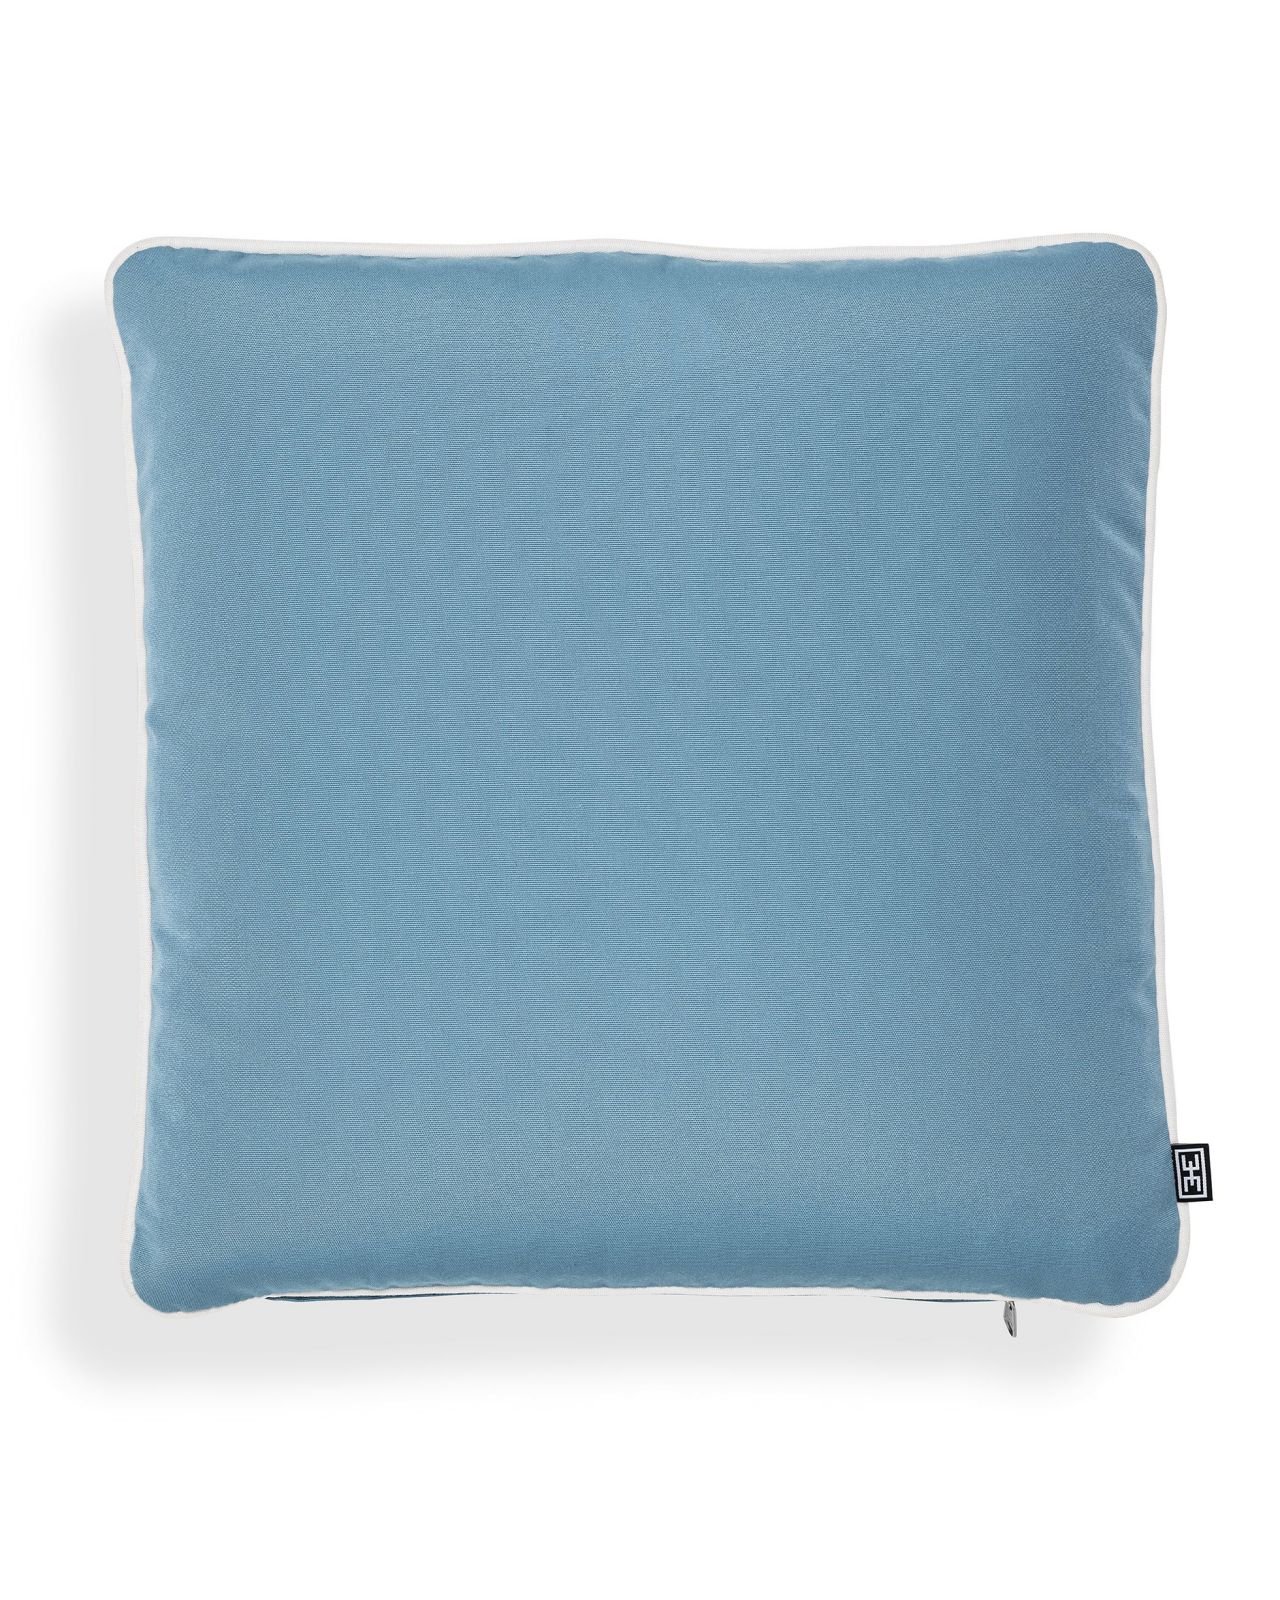 Sunbrella-tyyny, mineral blue